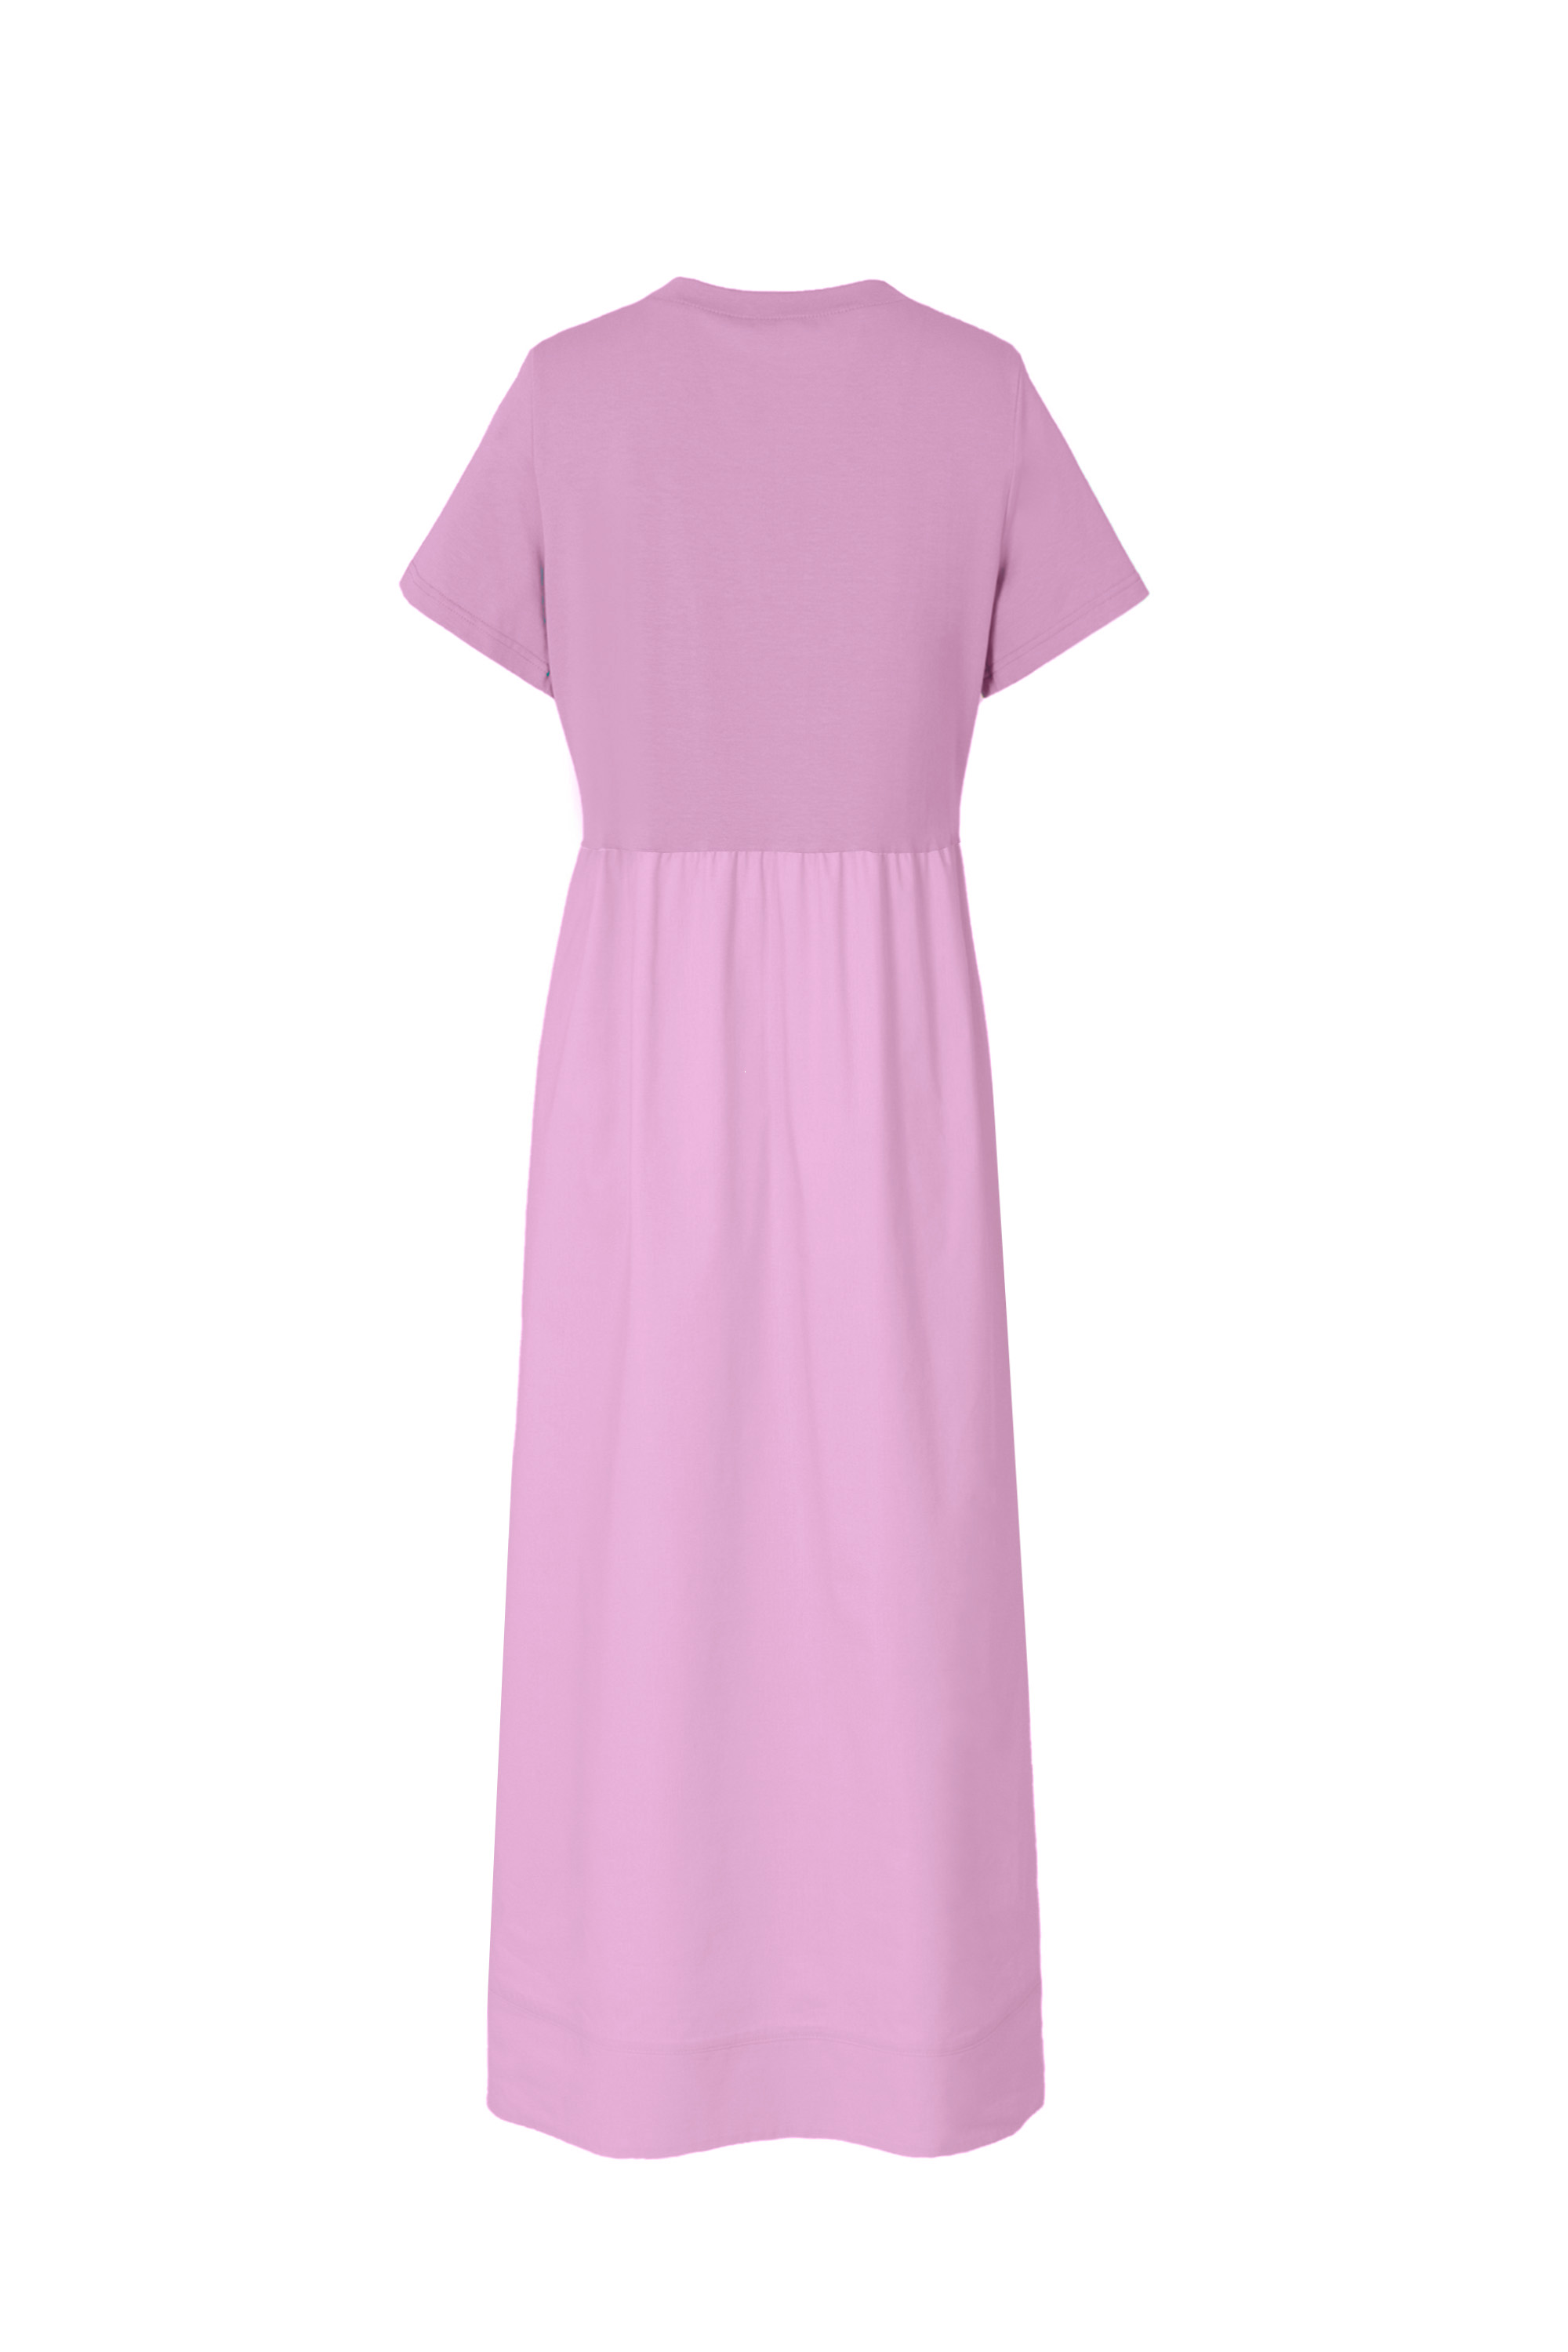 Платье женское 5К-12631-1